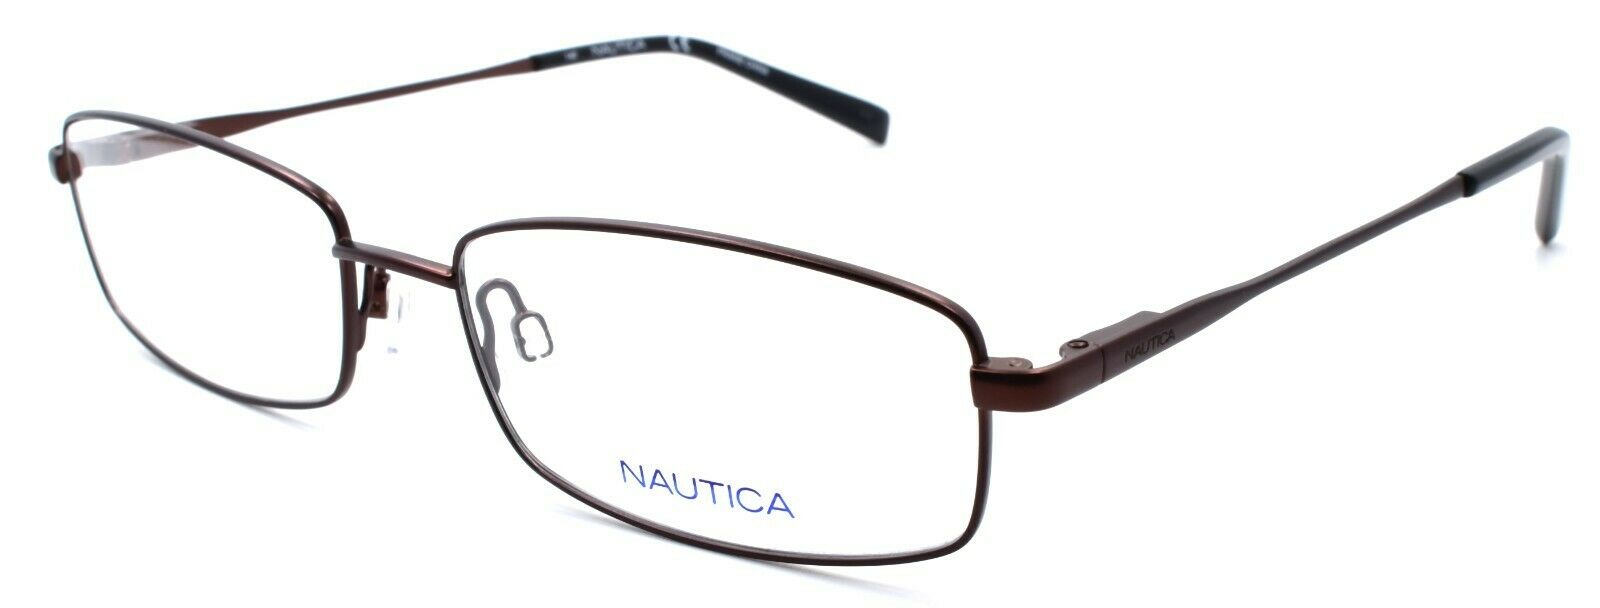 1-Nautica N7298 210 Men's Eyeglasses Frames 55-17-140 Satin Brown-688940462142-IKSpecs